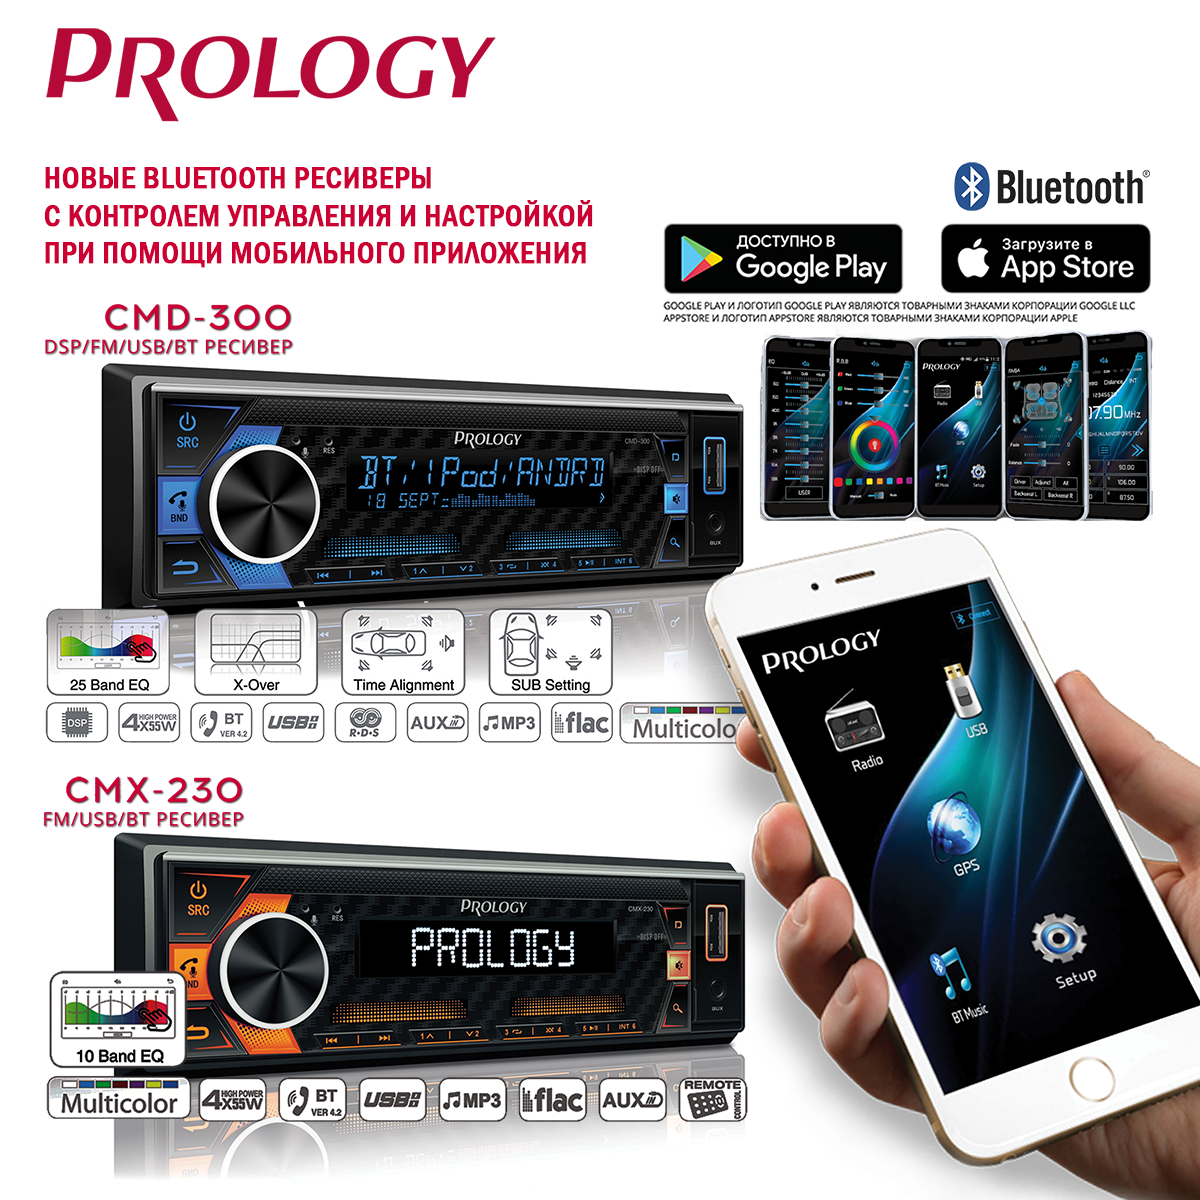 Bluetooth ресиверы PROLOGY CMX-230 и PROLOGY CMD-300 с новой прошивкой v.5.6   уже в Продаже!